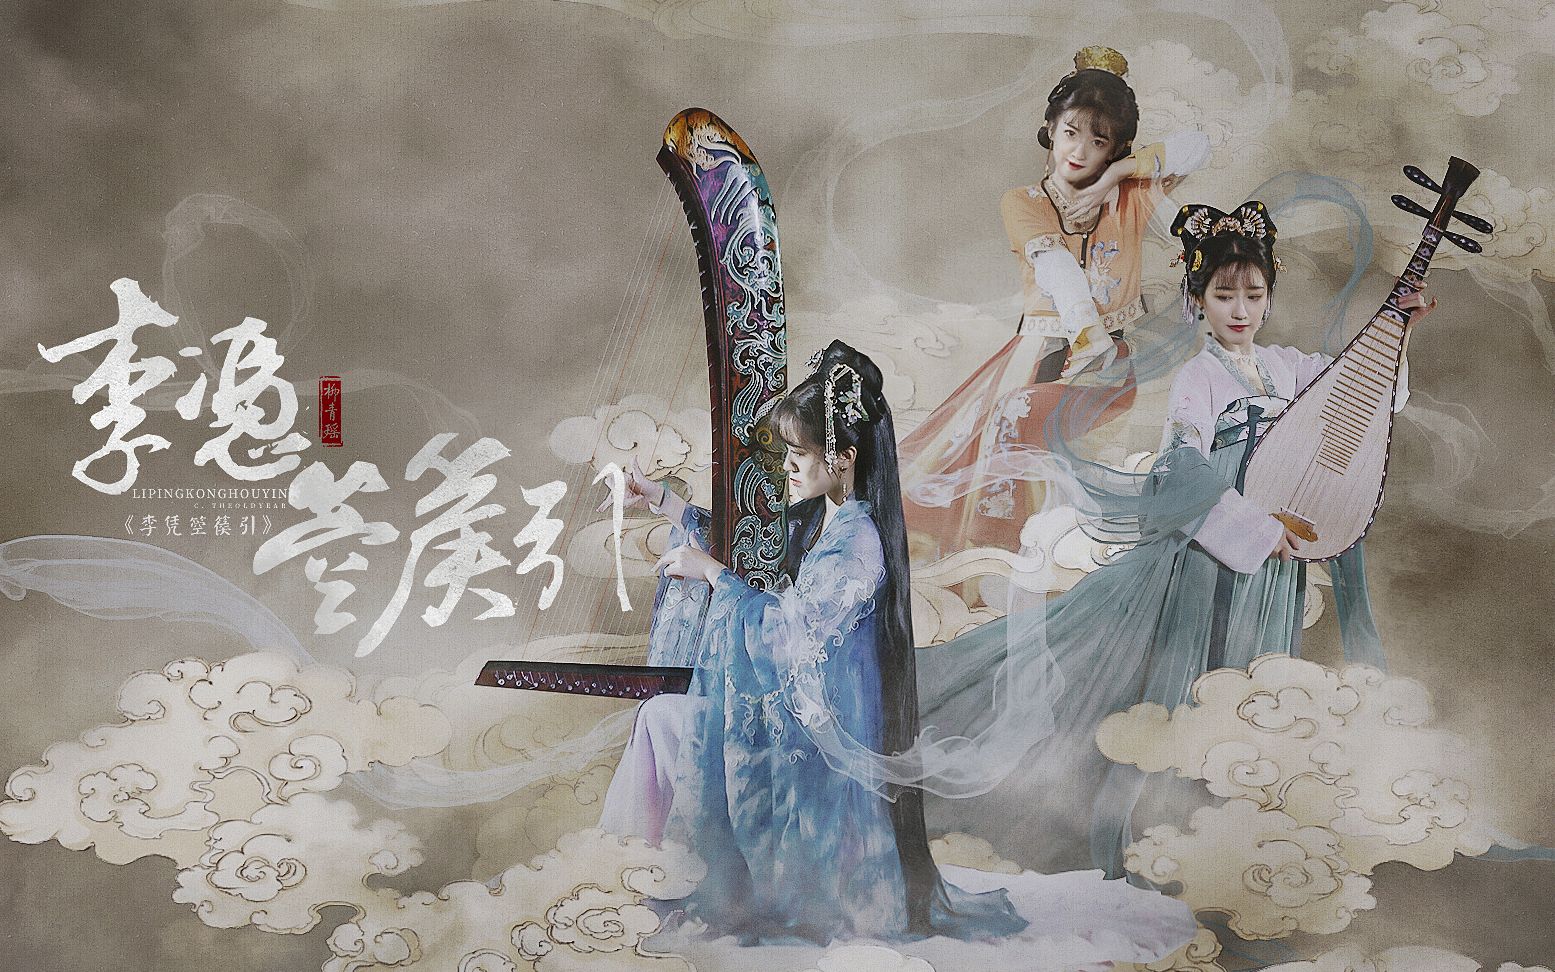 【青瑶×敦煌壁画箜篌】《李凭箜篌引》 认识中国人的乐器——箜篌